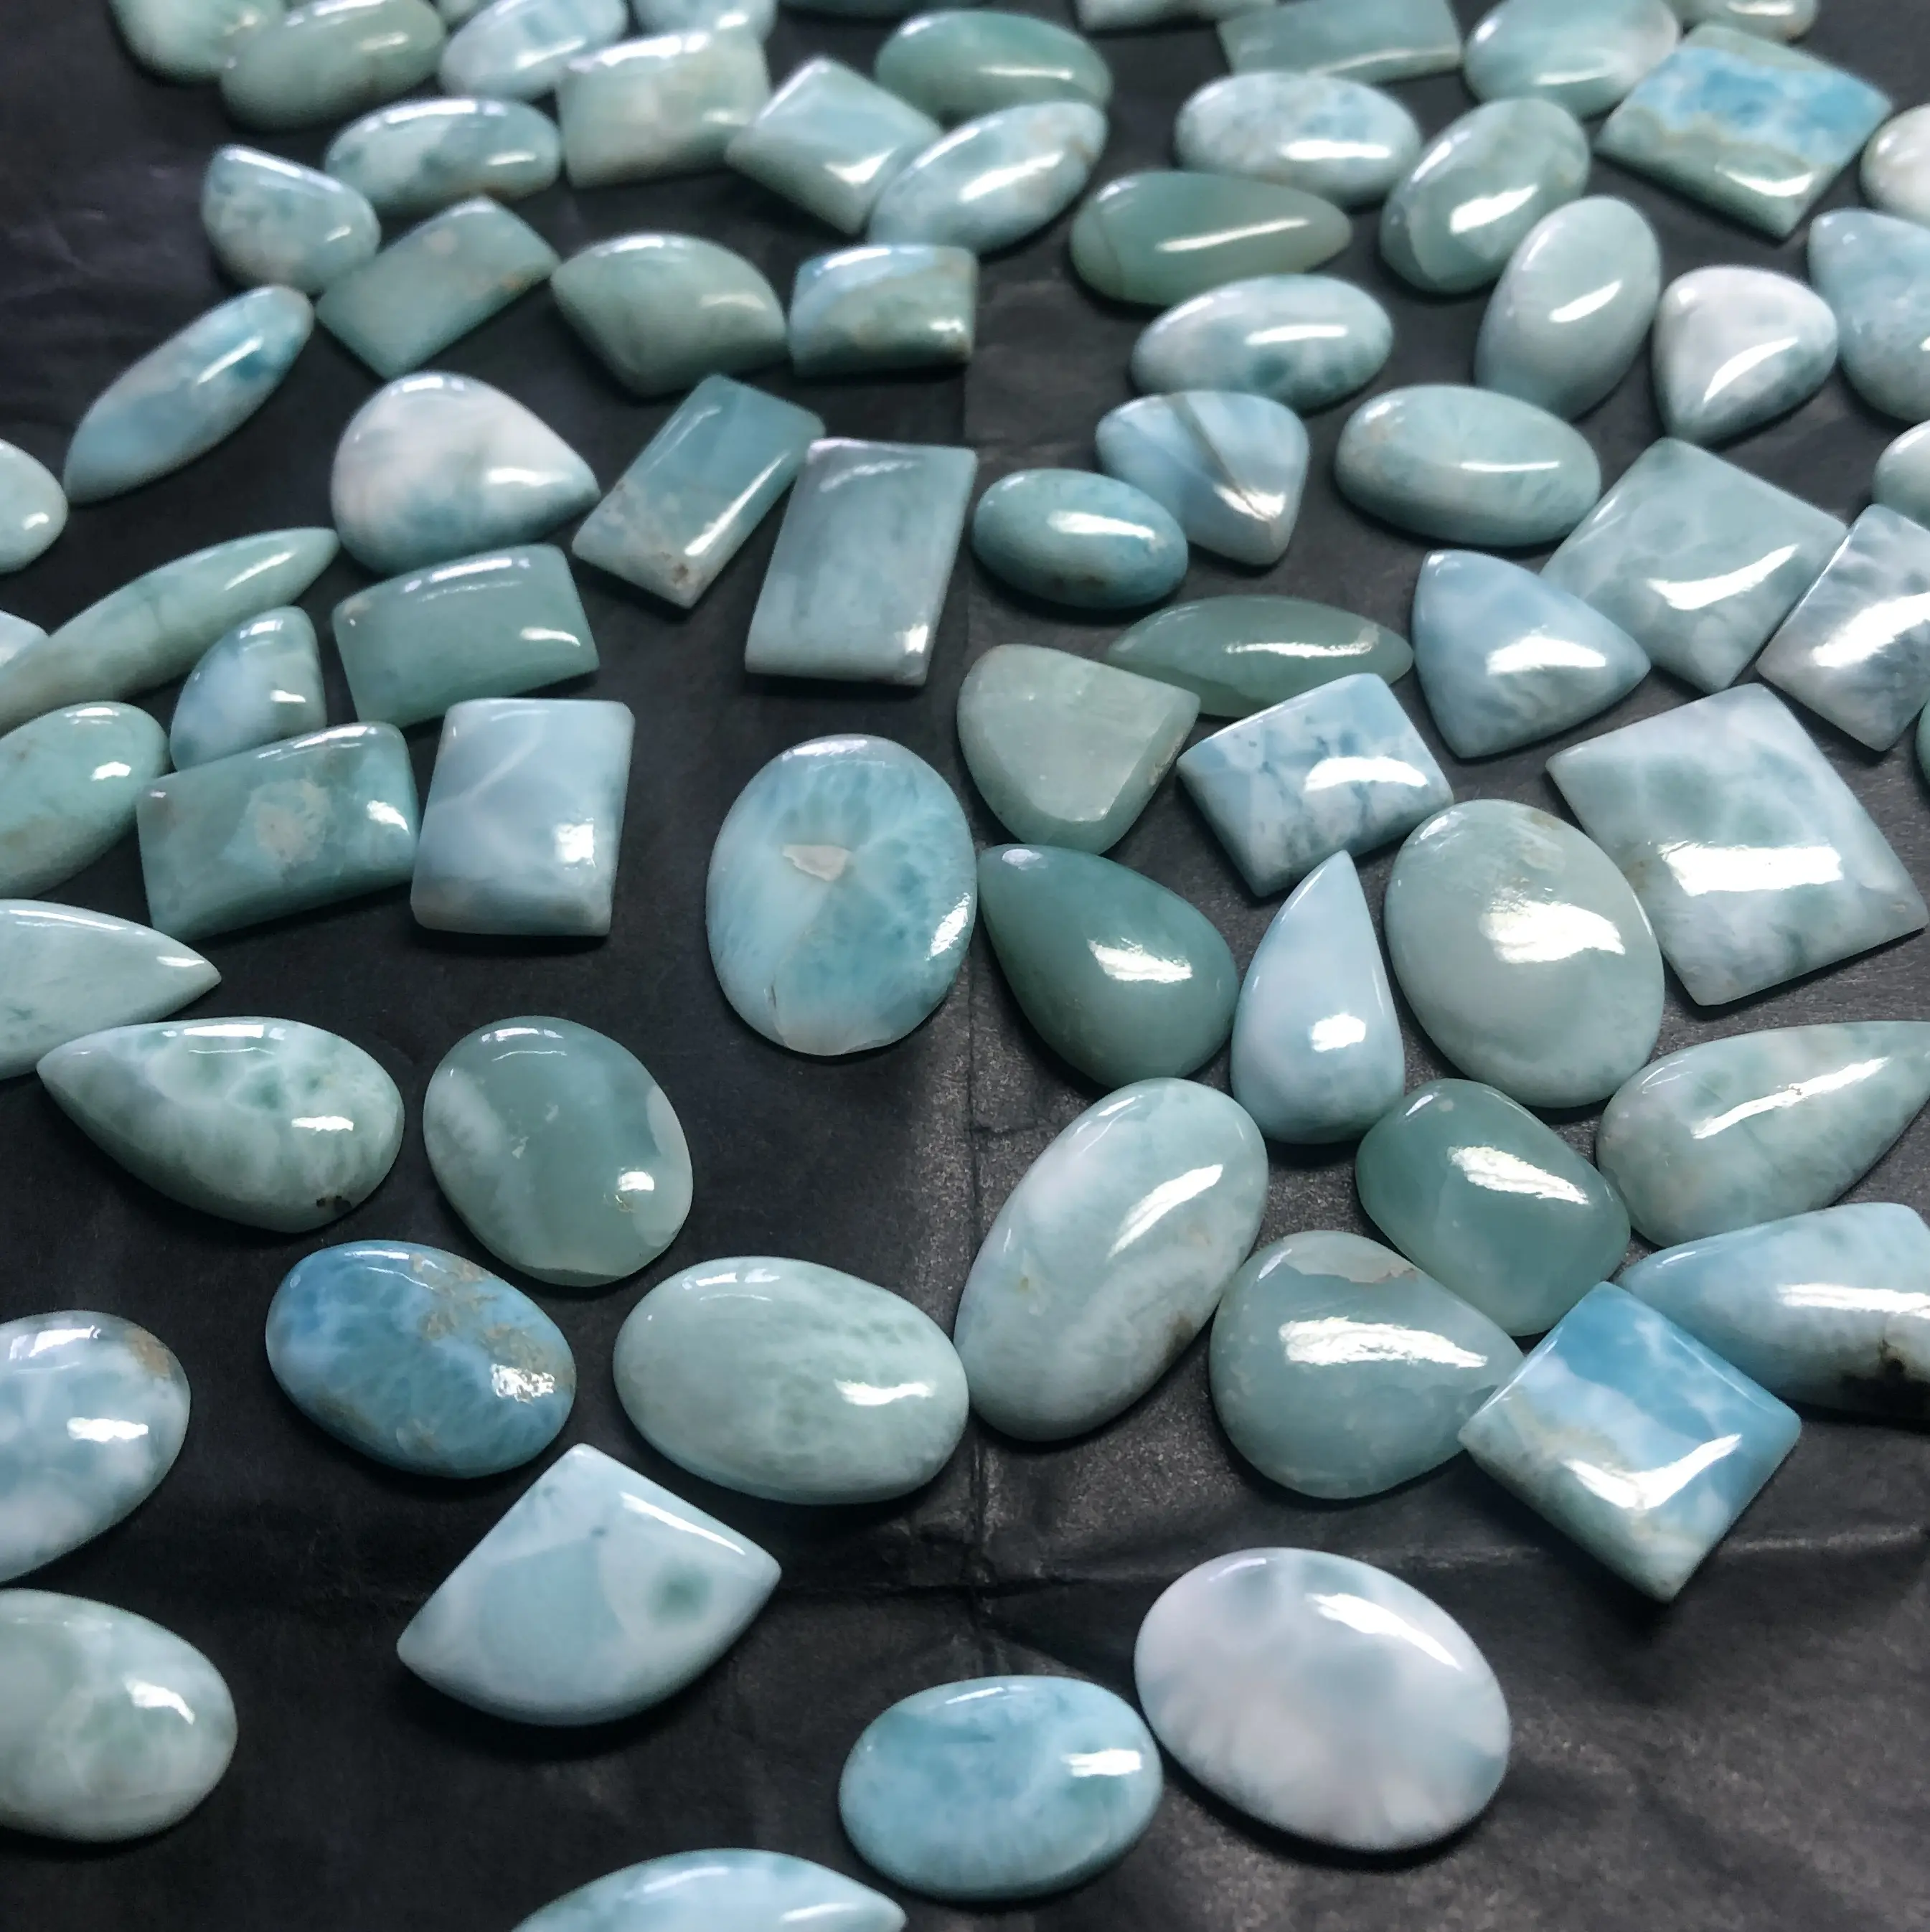 Lote de cabujones sueltos al por mayor de piedra Larimar azul natural de tamaño libre del proveedor de piedras preciosas a precio de Mayorista distribuidor en línea